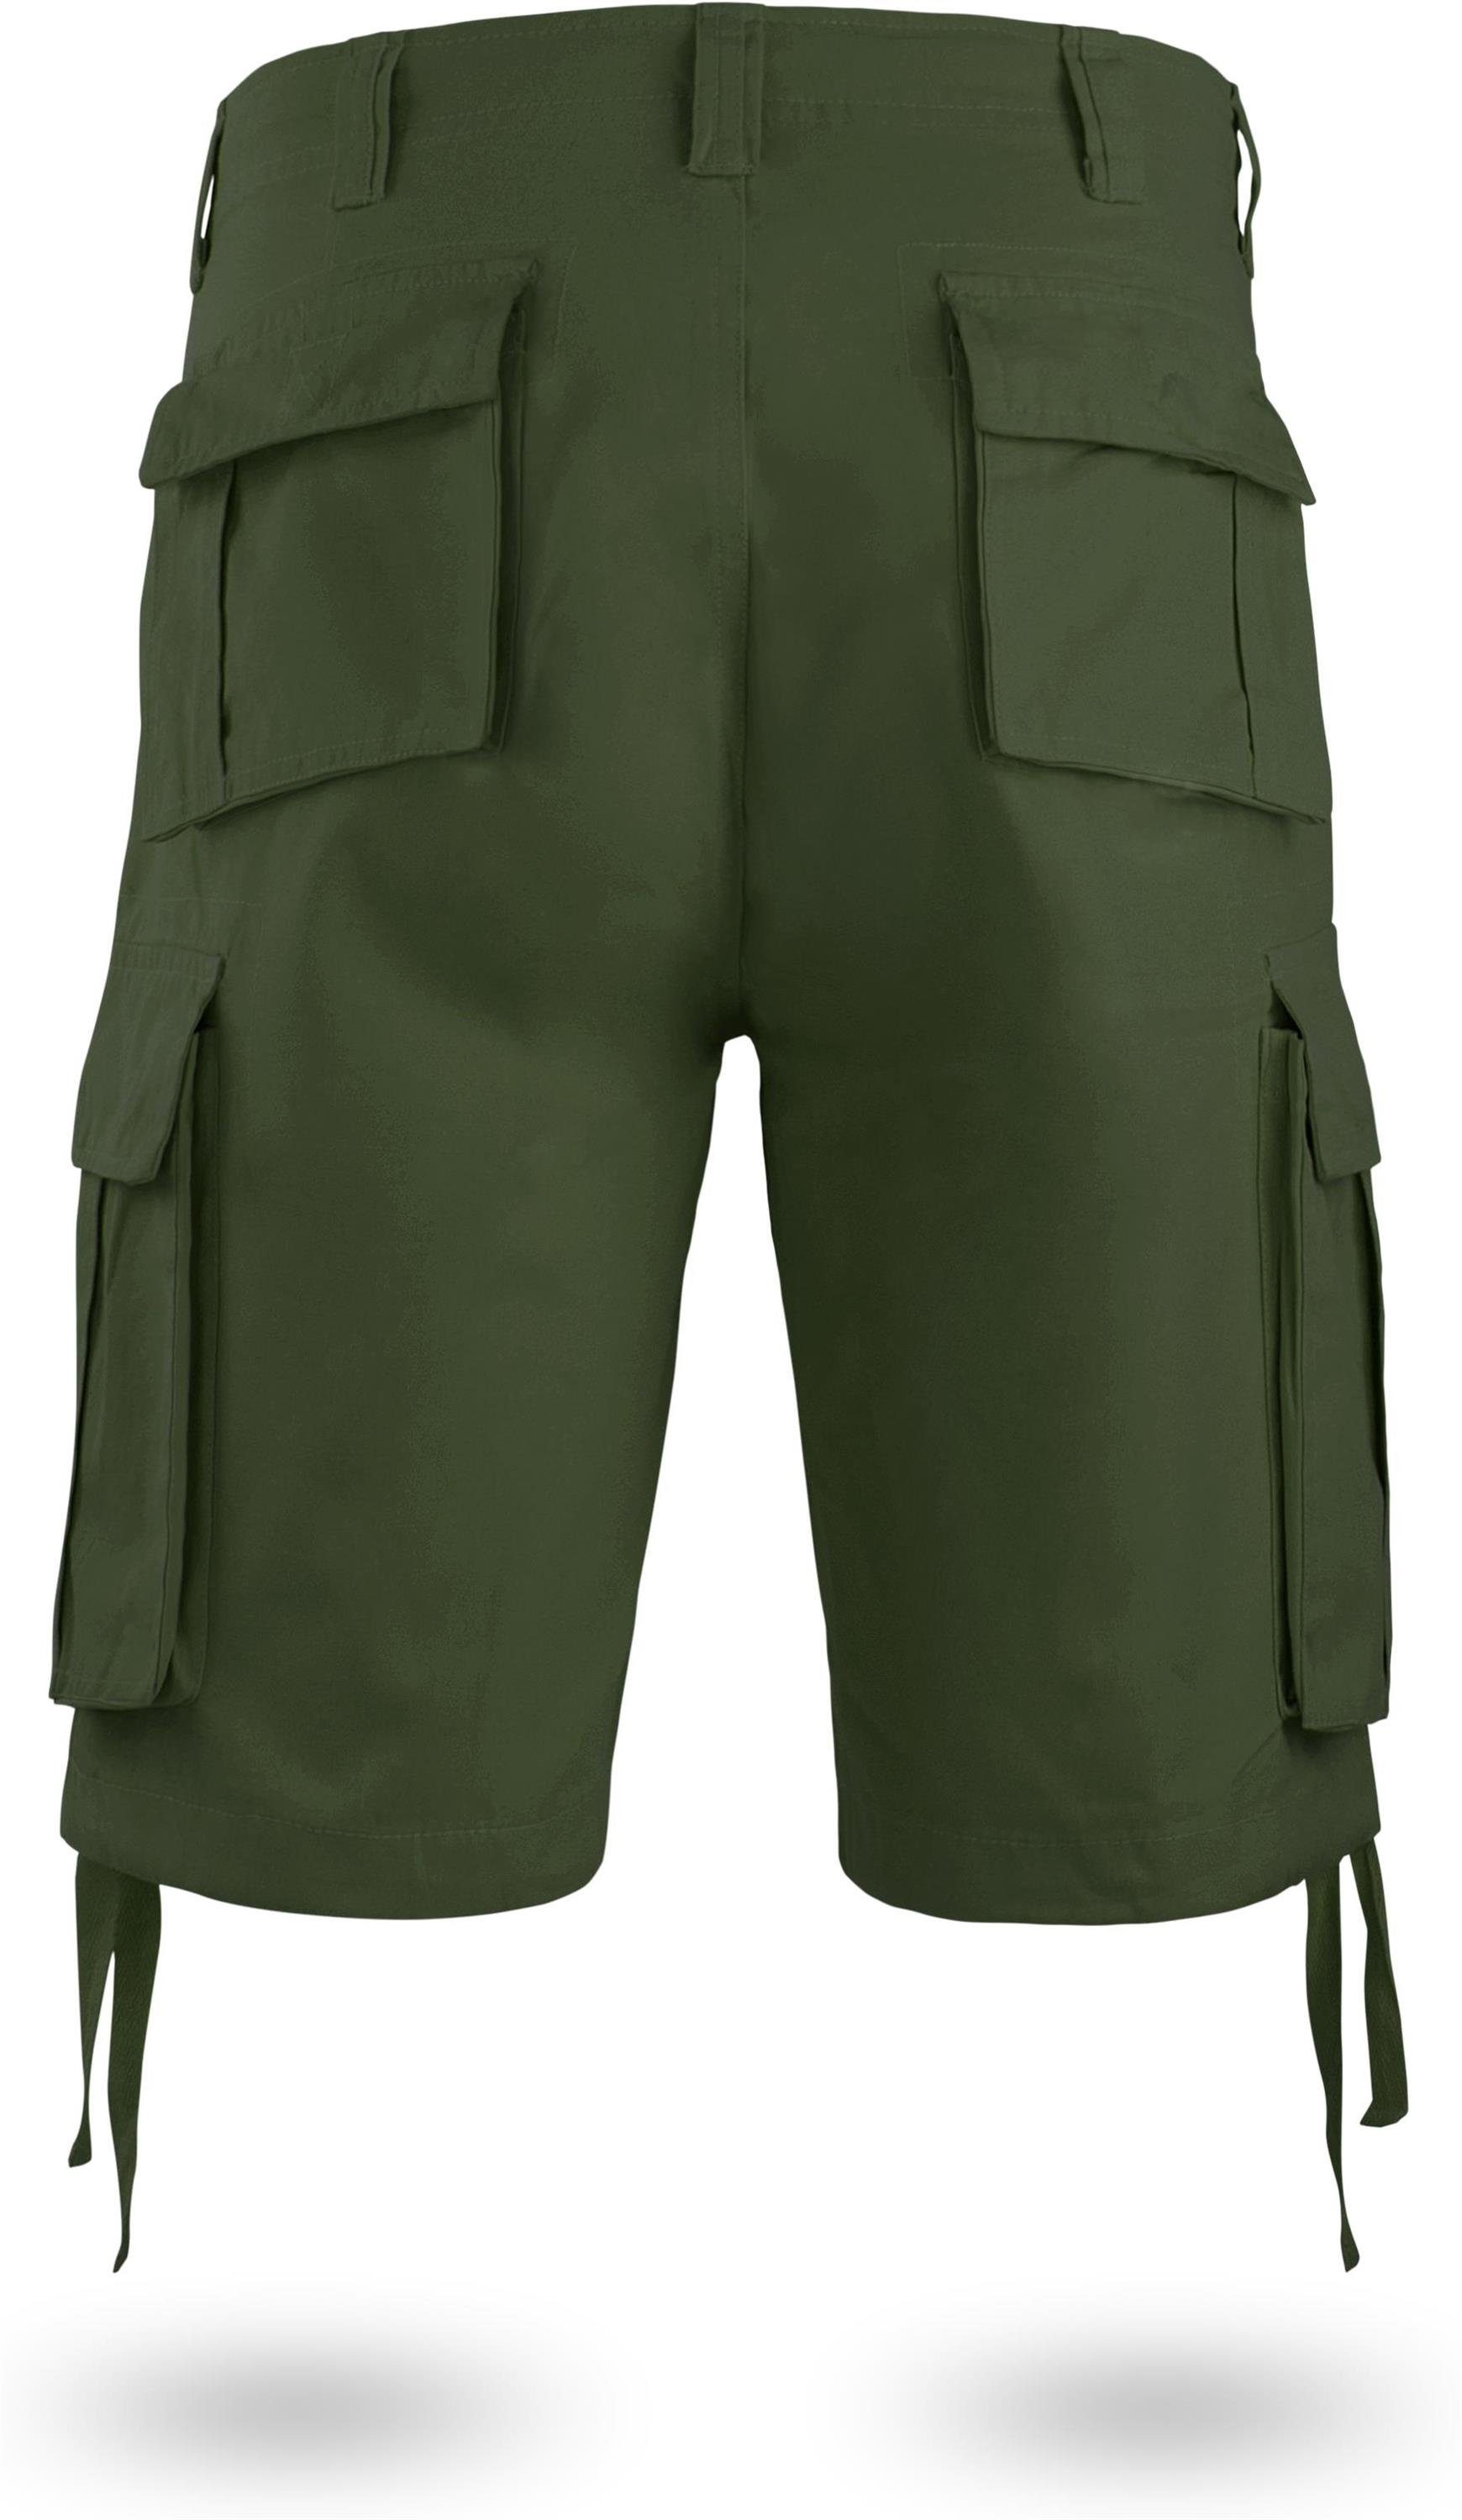 Kalahari kurze normani Sommershorts Herren Shorts aus 100% Bio-Baumwolle Bermudas Vintage Oliv mit Shorts Cargotaschen